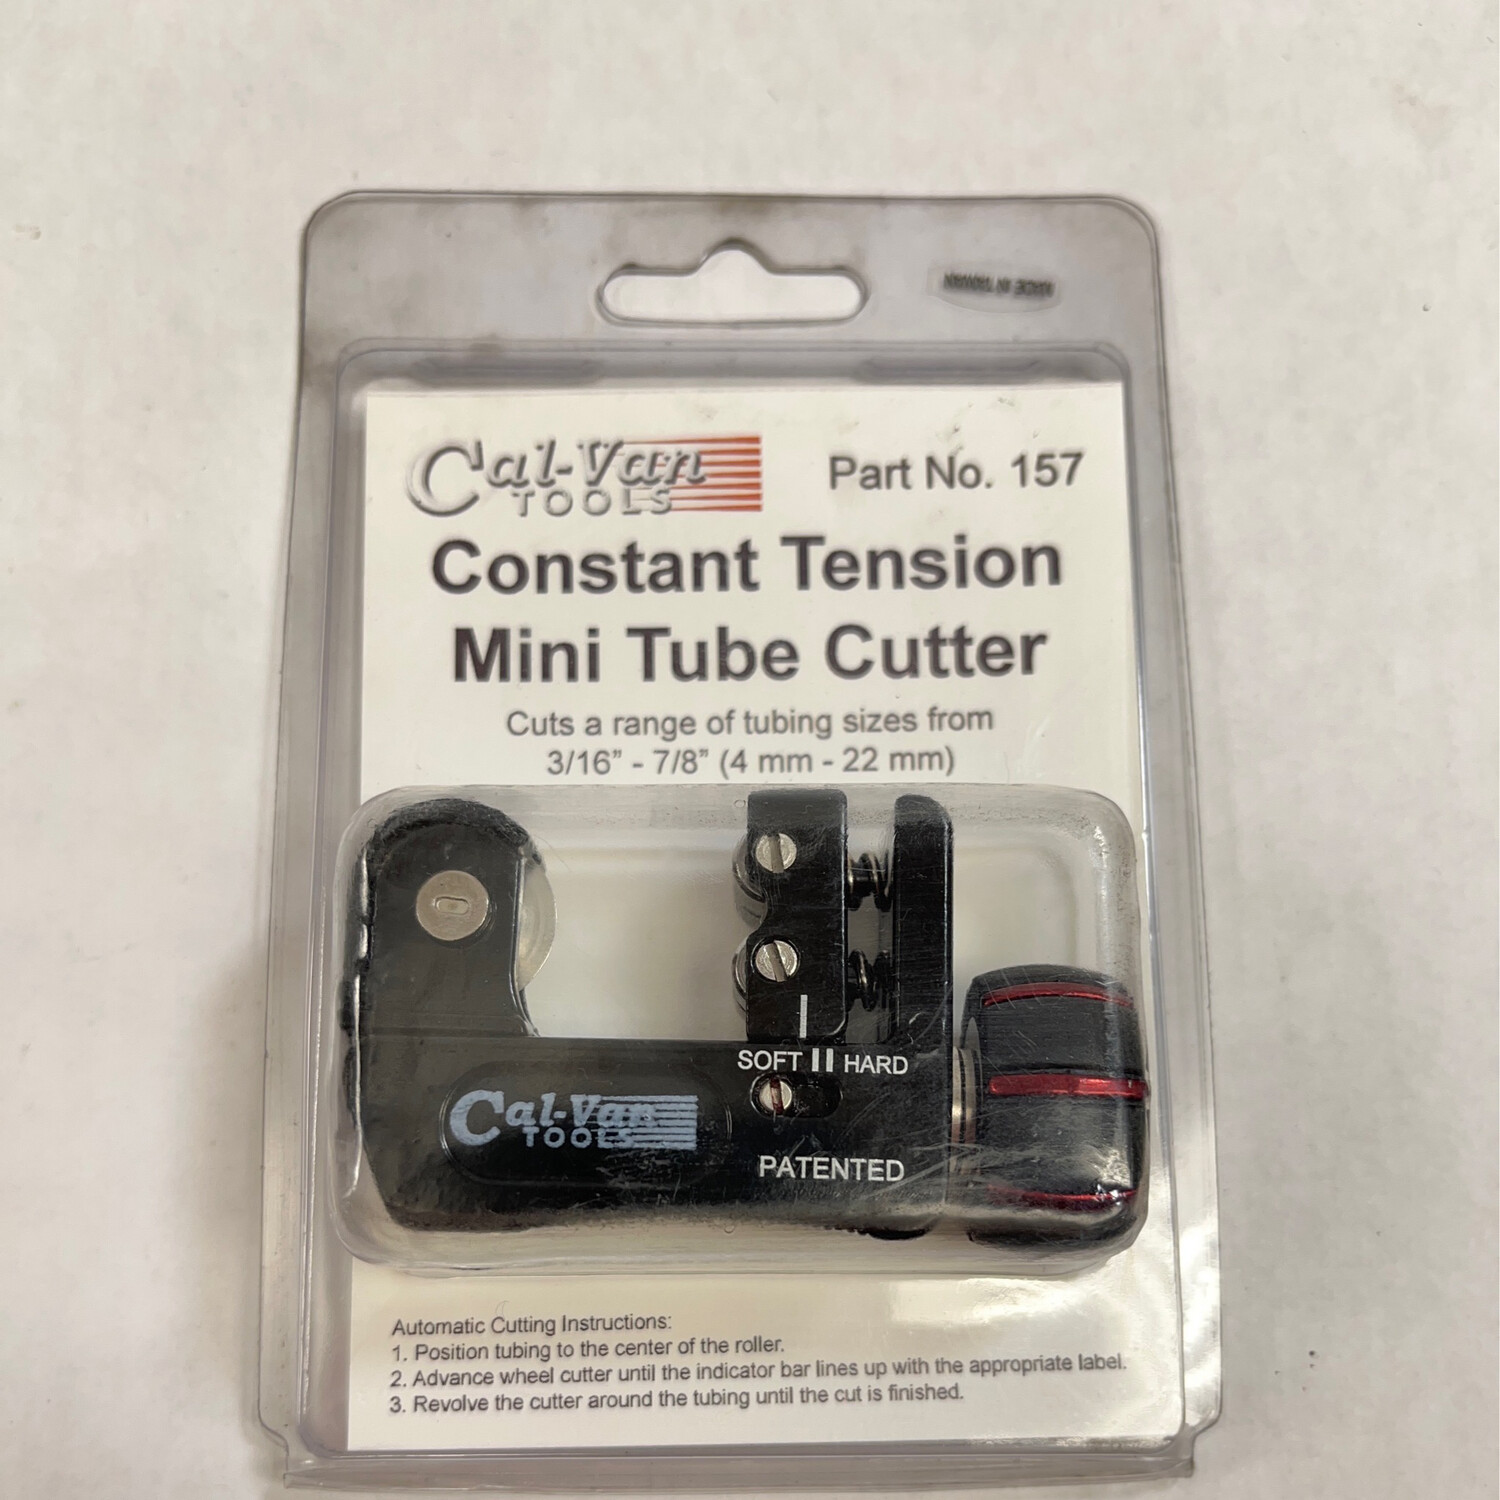 Cal-Van Tools Constant Tension Mini Tube Cutter, 157